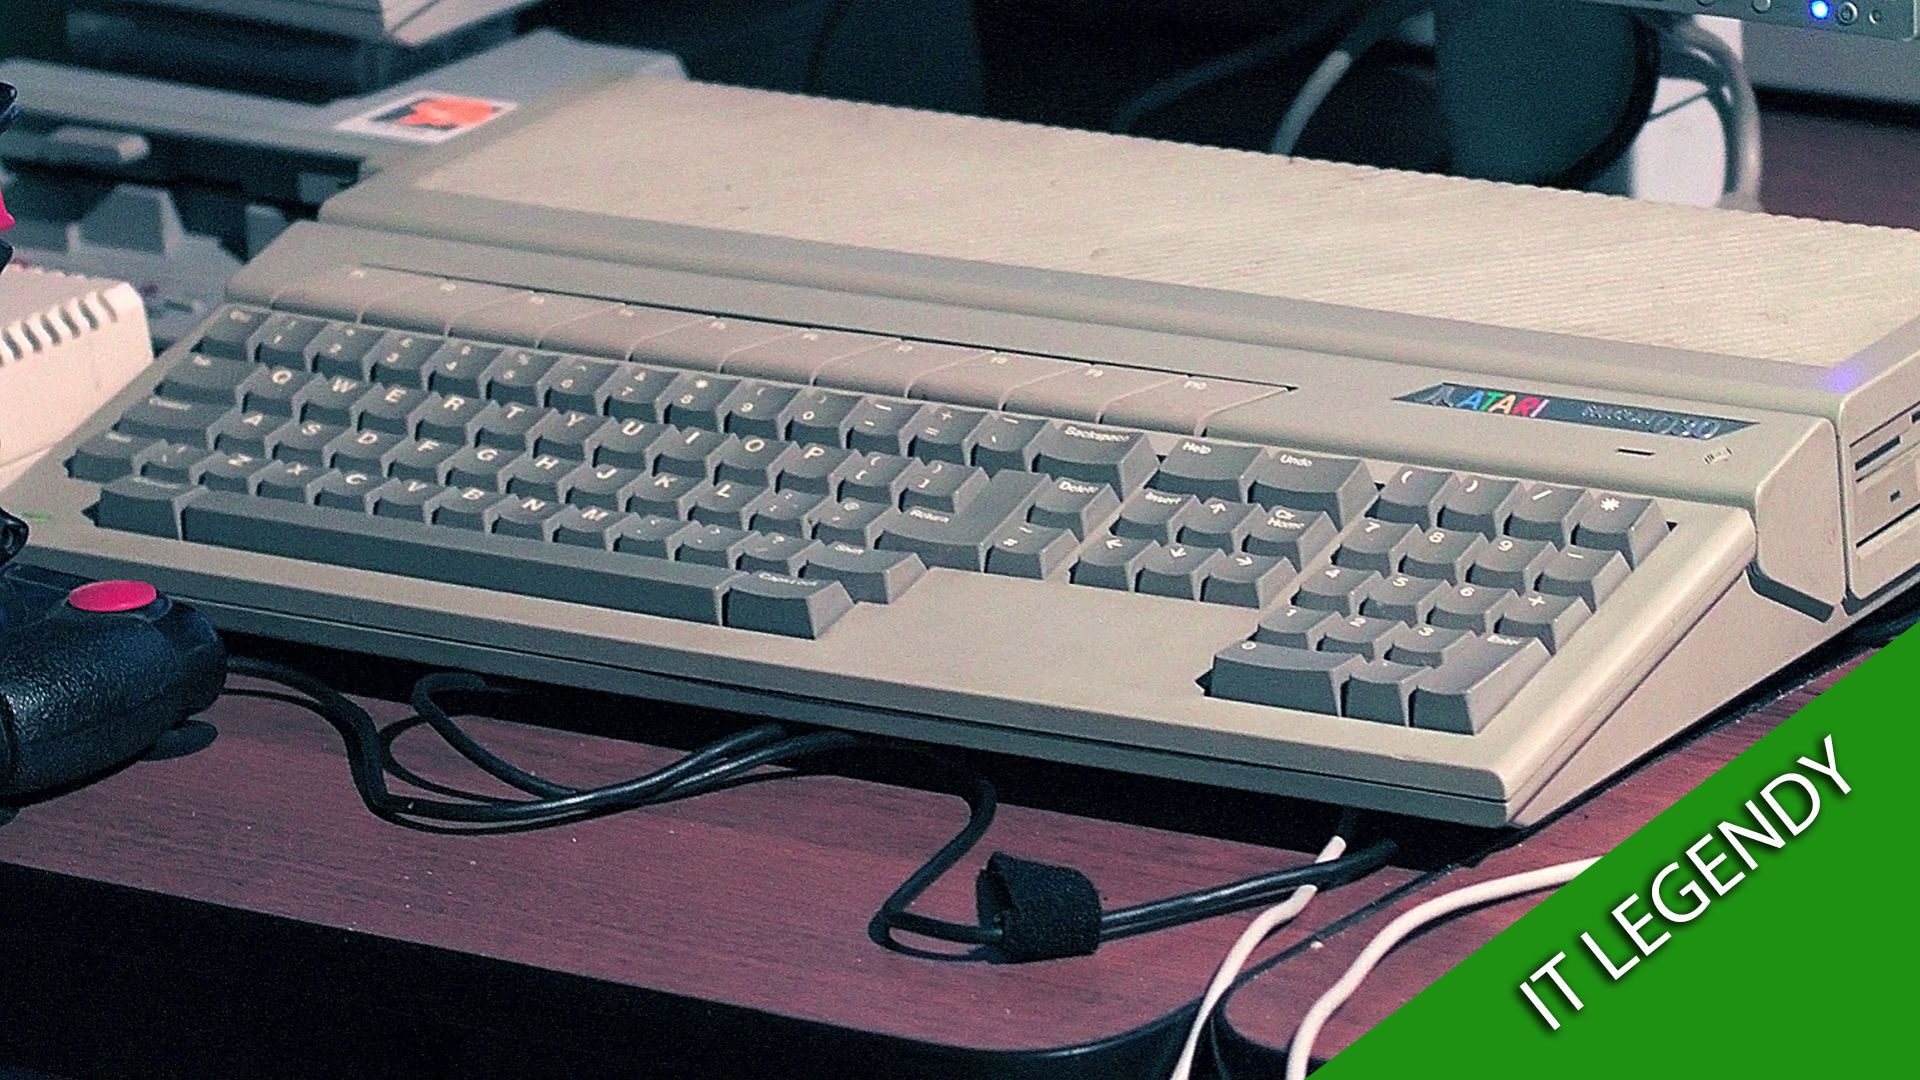 Počítač Atari Falcon bol „posledný svojho druhu“. Týmto najviac zaujal